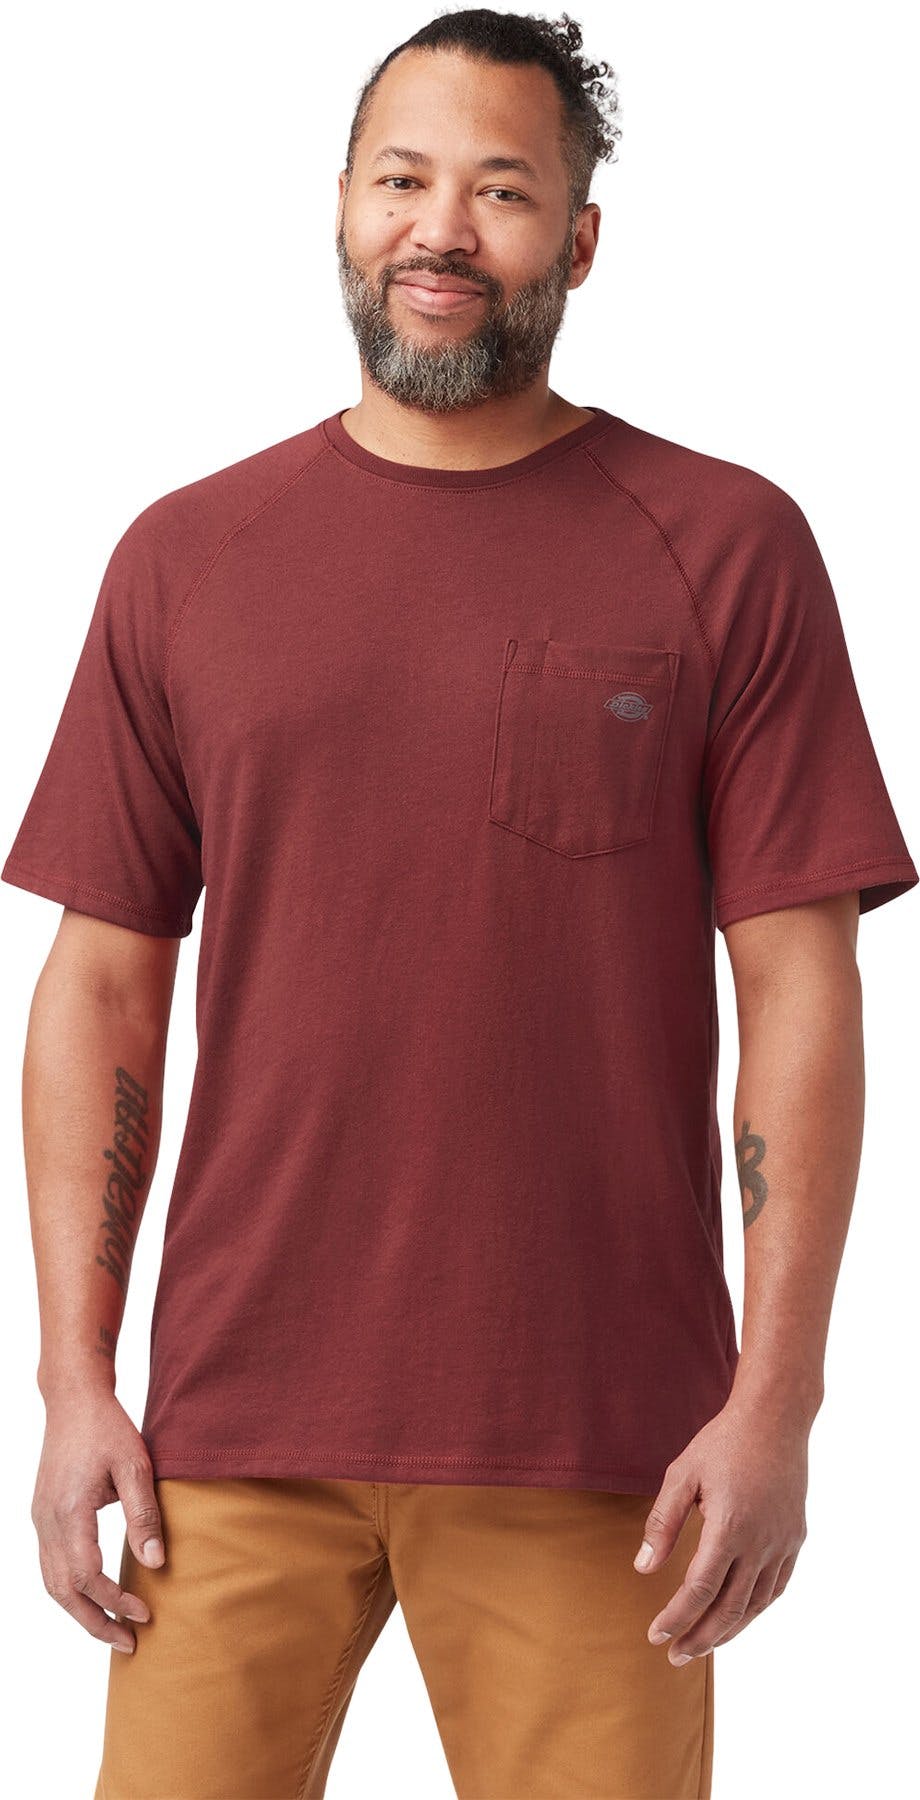 Numéro de l'image de la galerie de produits 1 pour le produit T-shirt avec poche à manches courtes Cooling - Homme